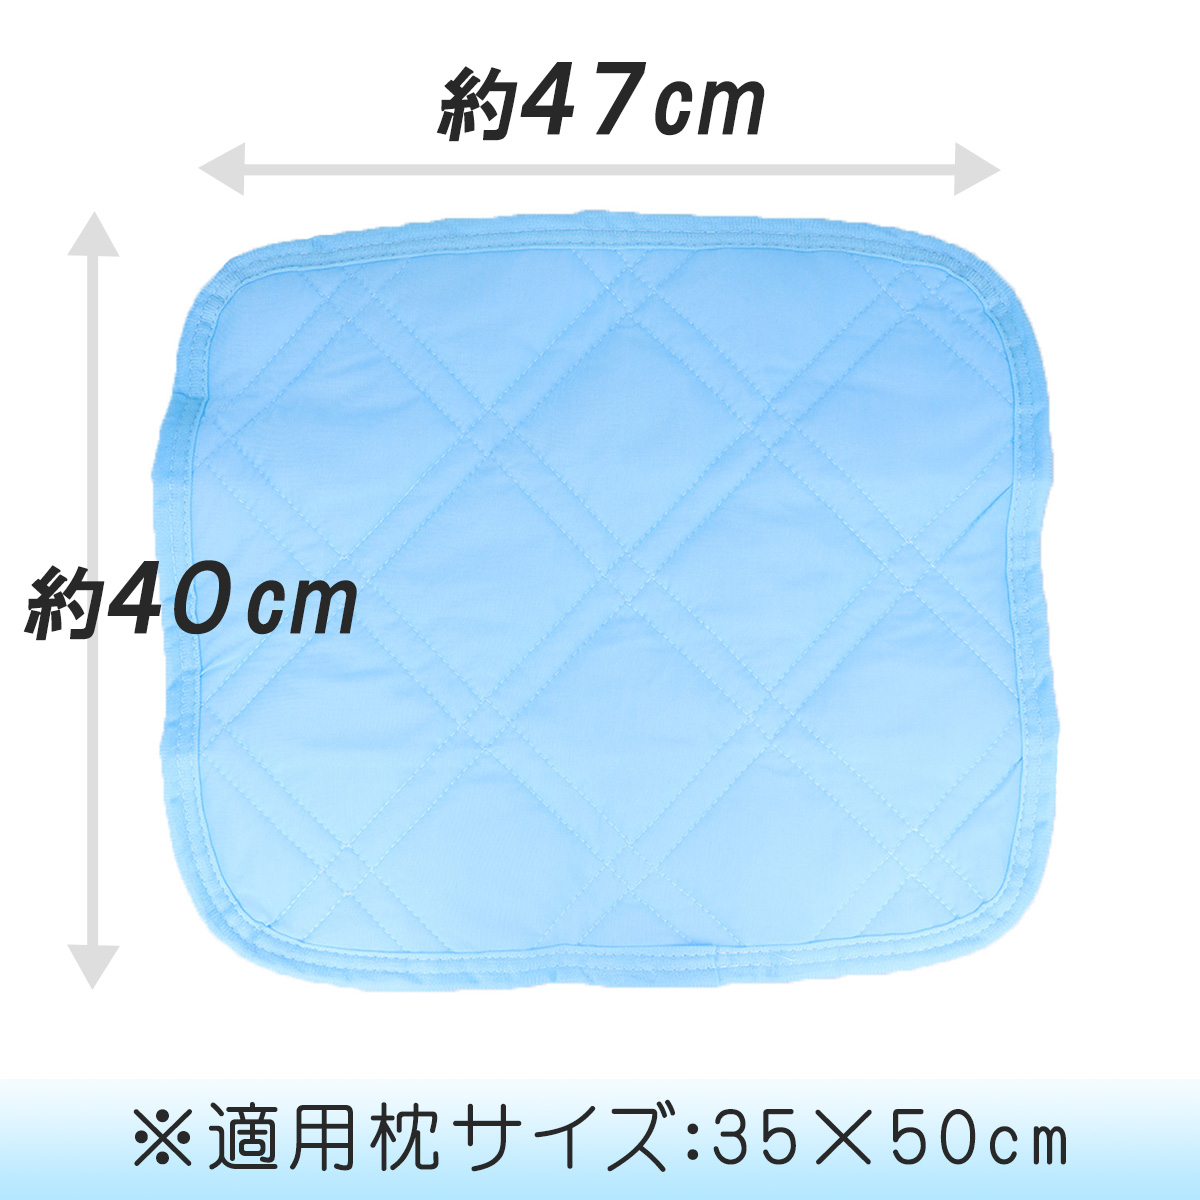 サックス色の接触冷感枕パッドの写真と縦横サイズを明記したバナー画像